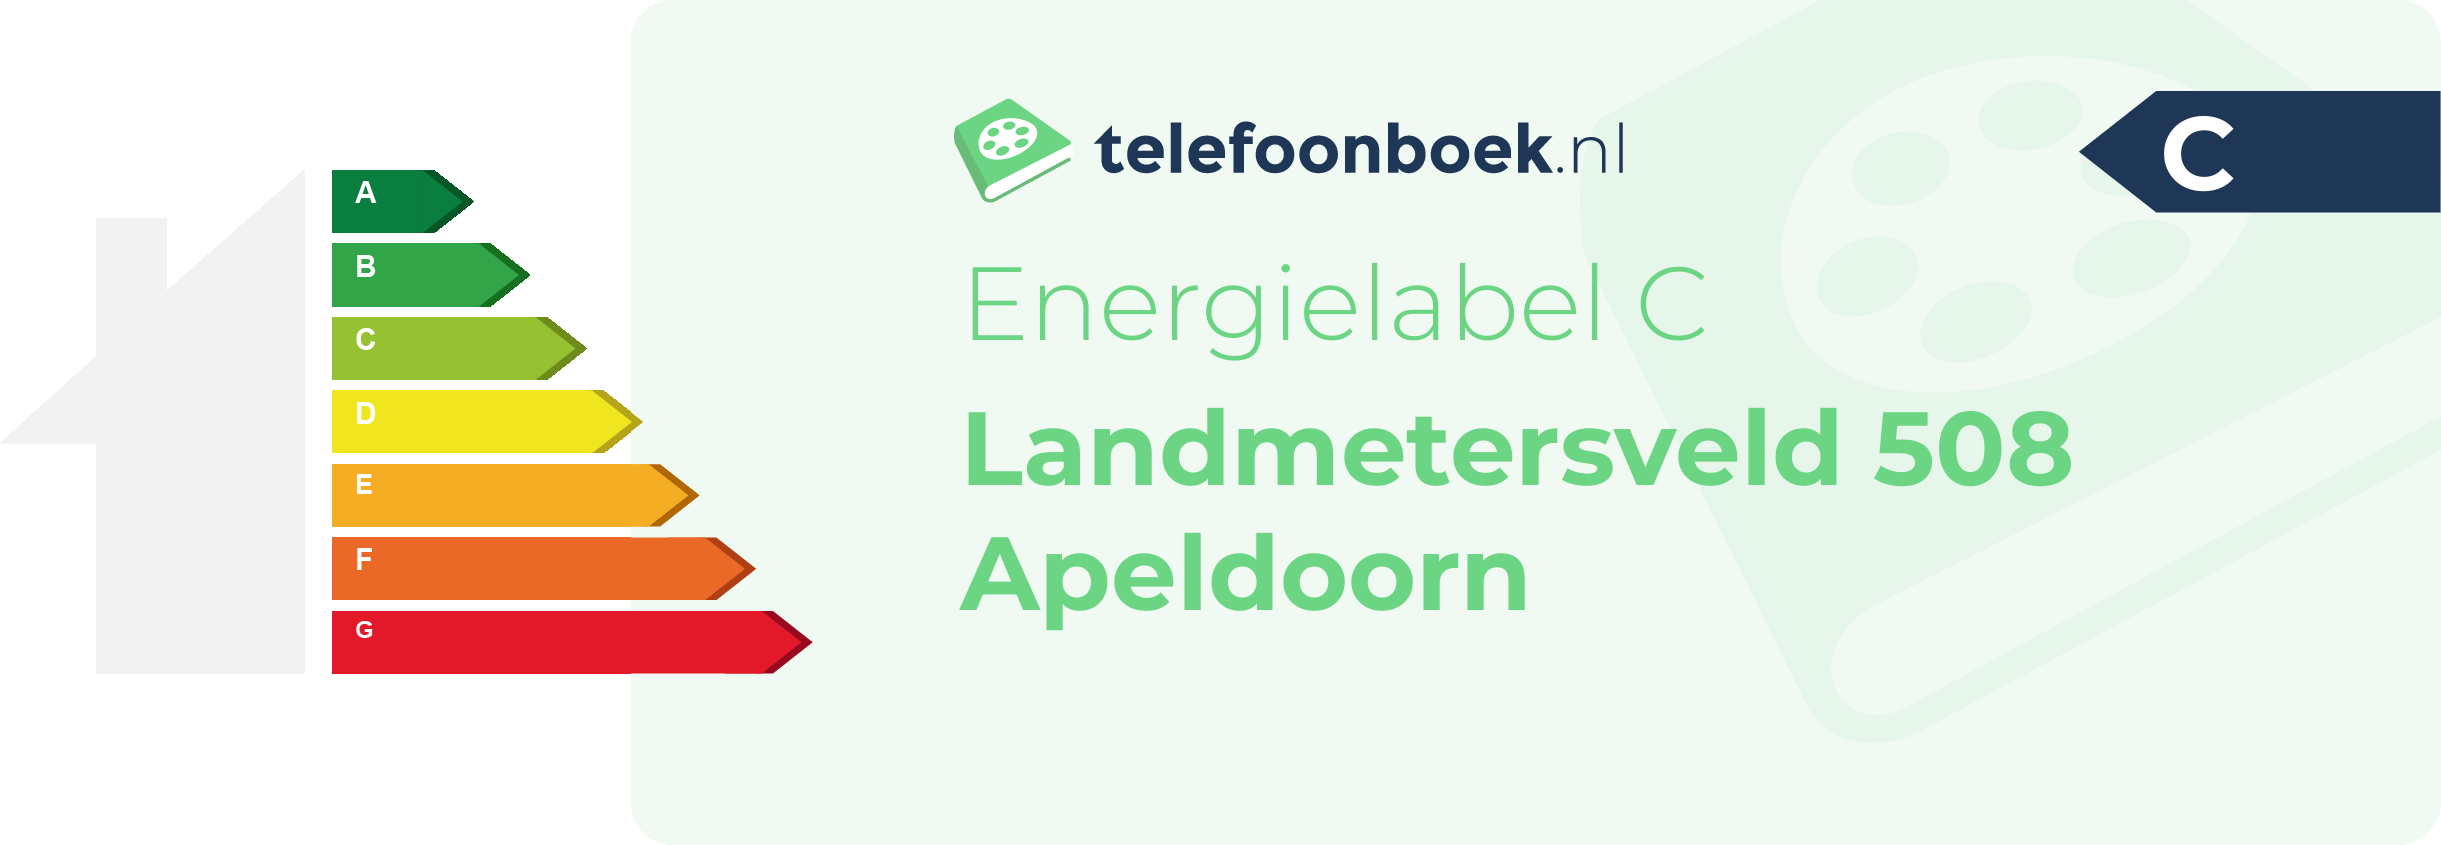 Energielabel Landmetersveld 508 Apeldoorn